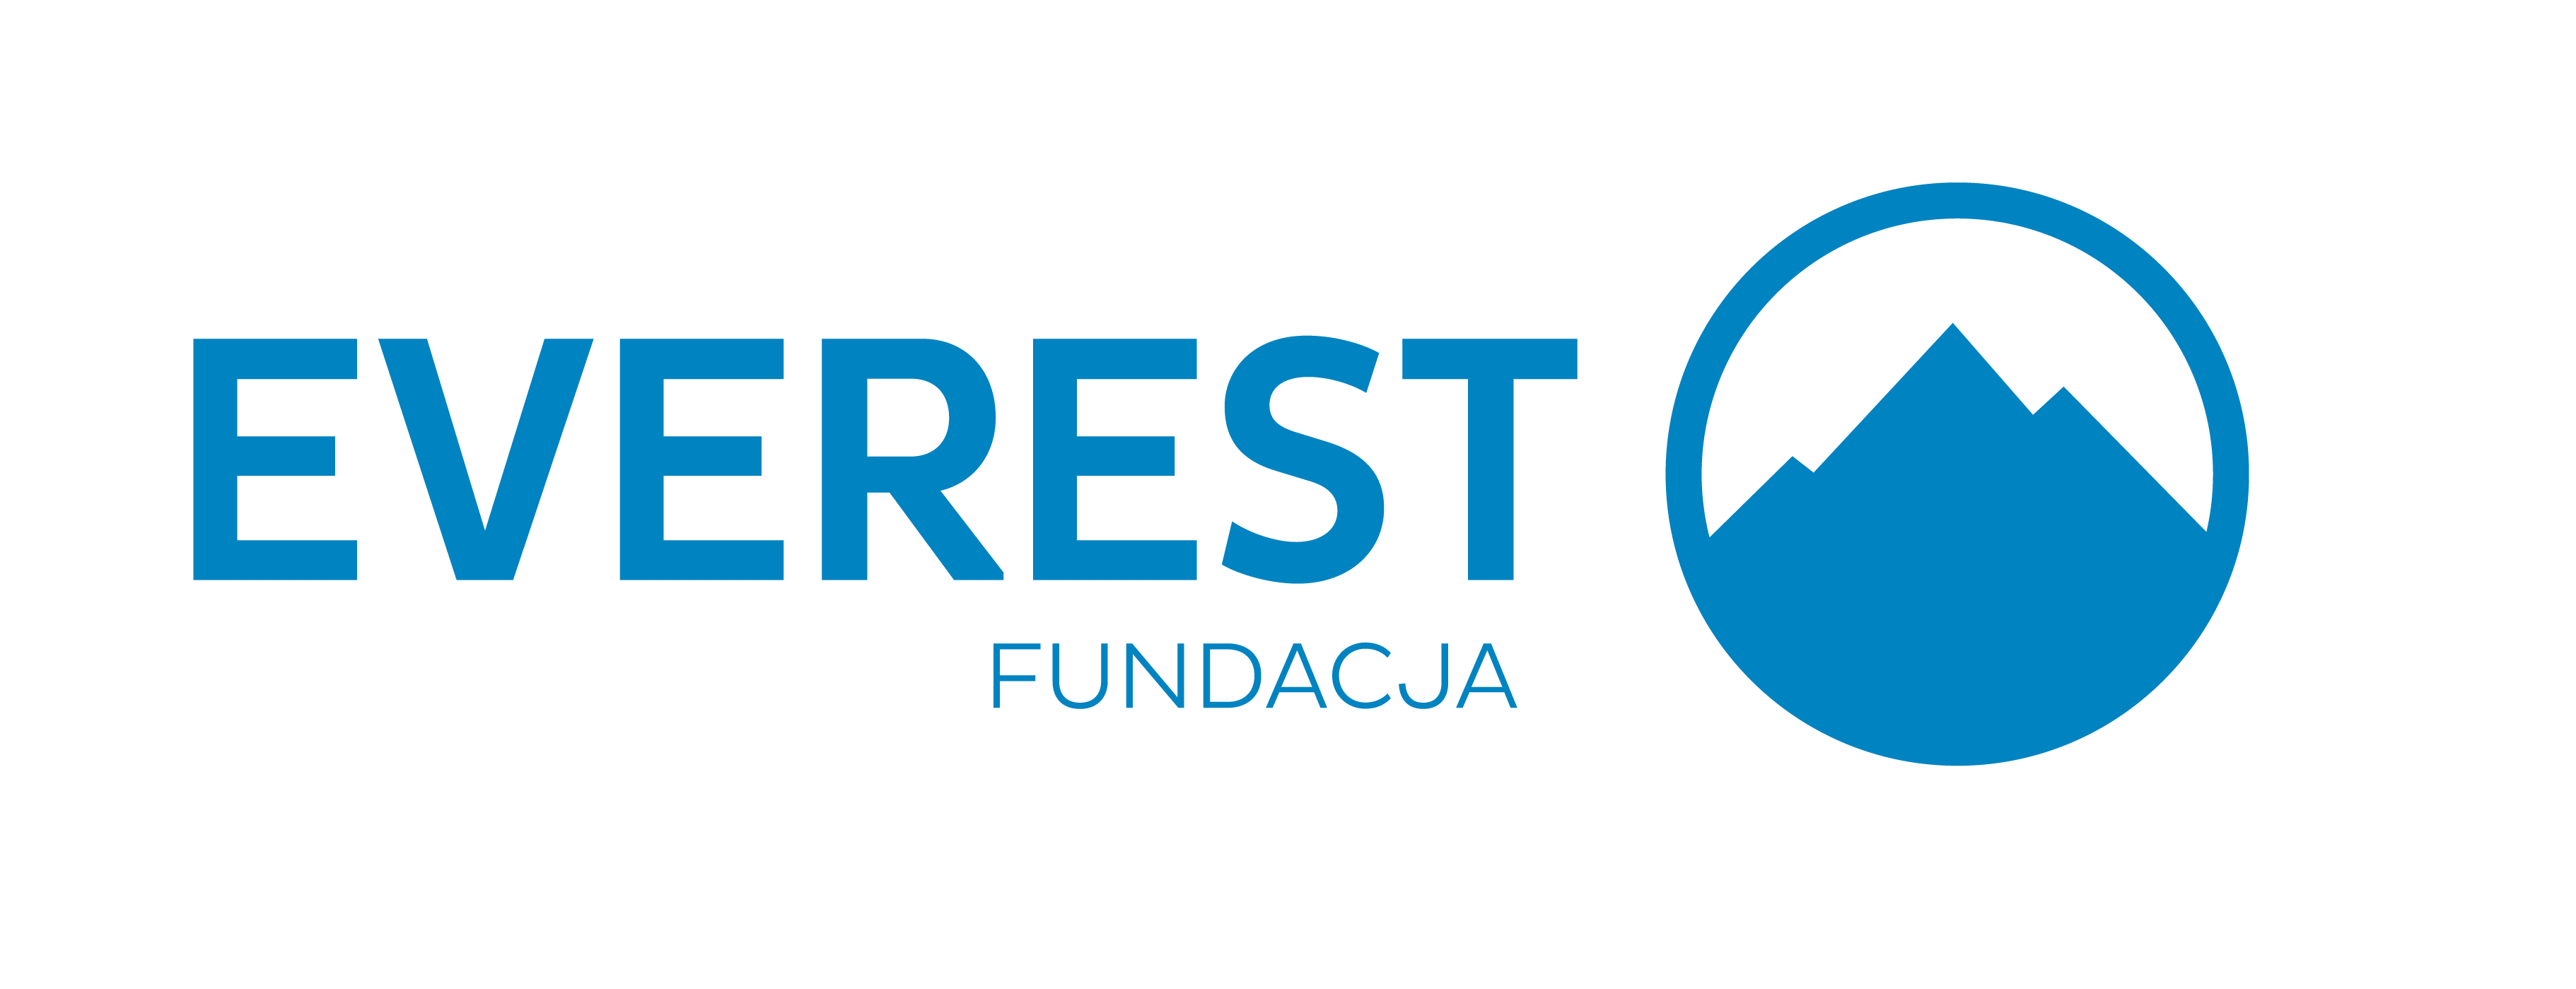 fundacja everest logo